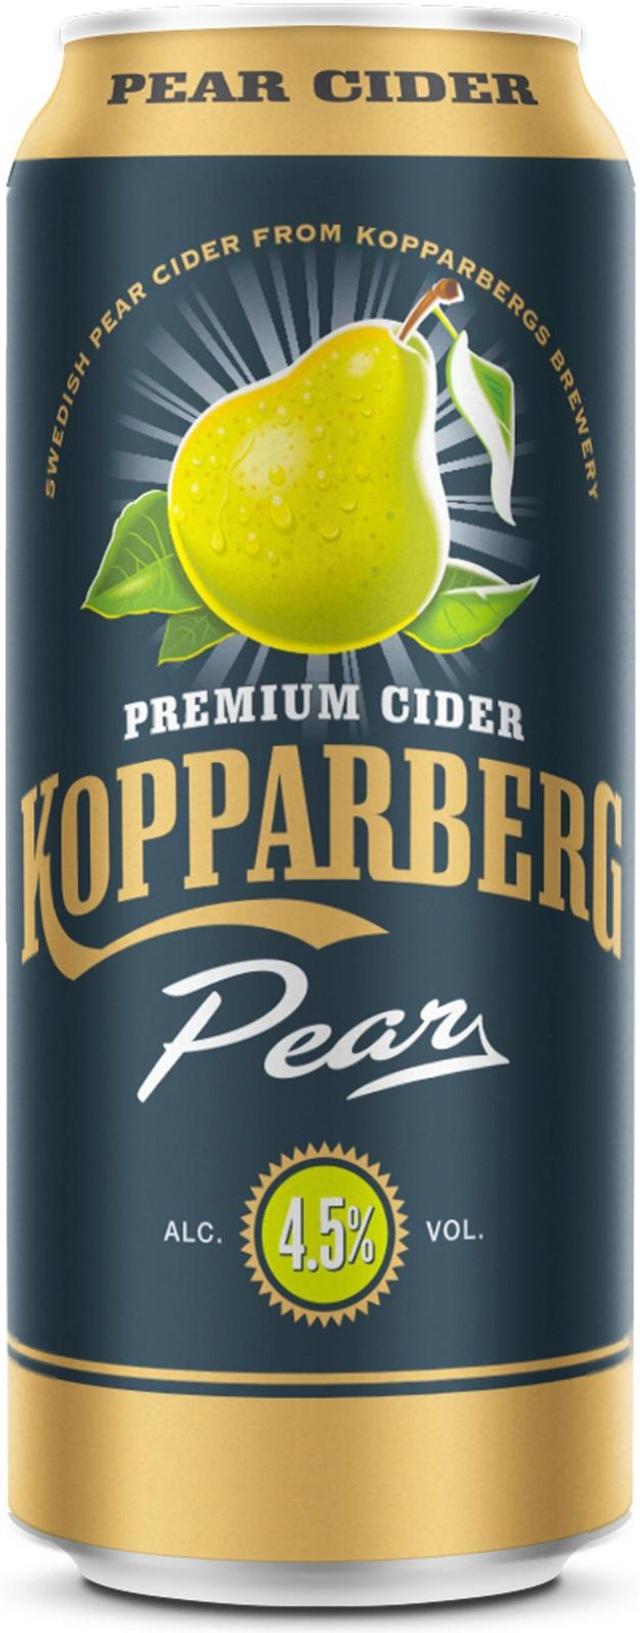 Premium Cider Kopparberg Pear 4,5%, Päärynäsiideri tölkki 44cl